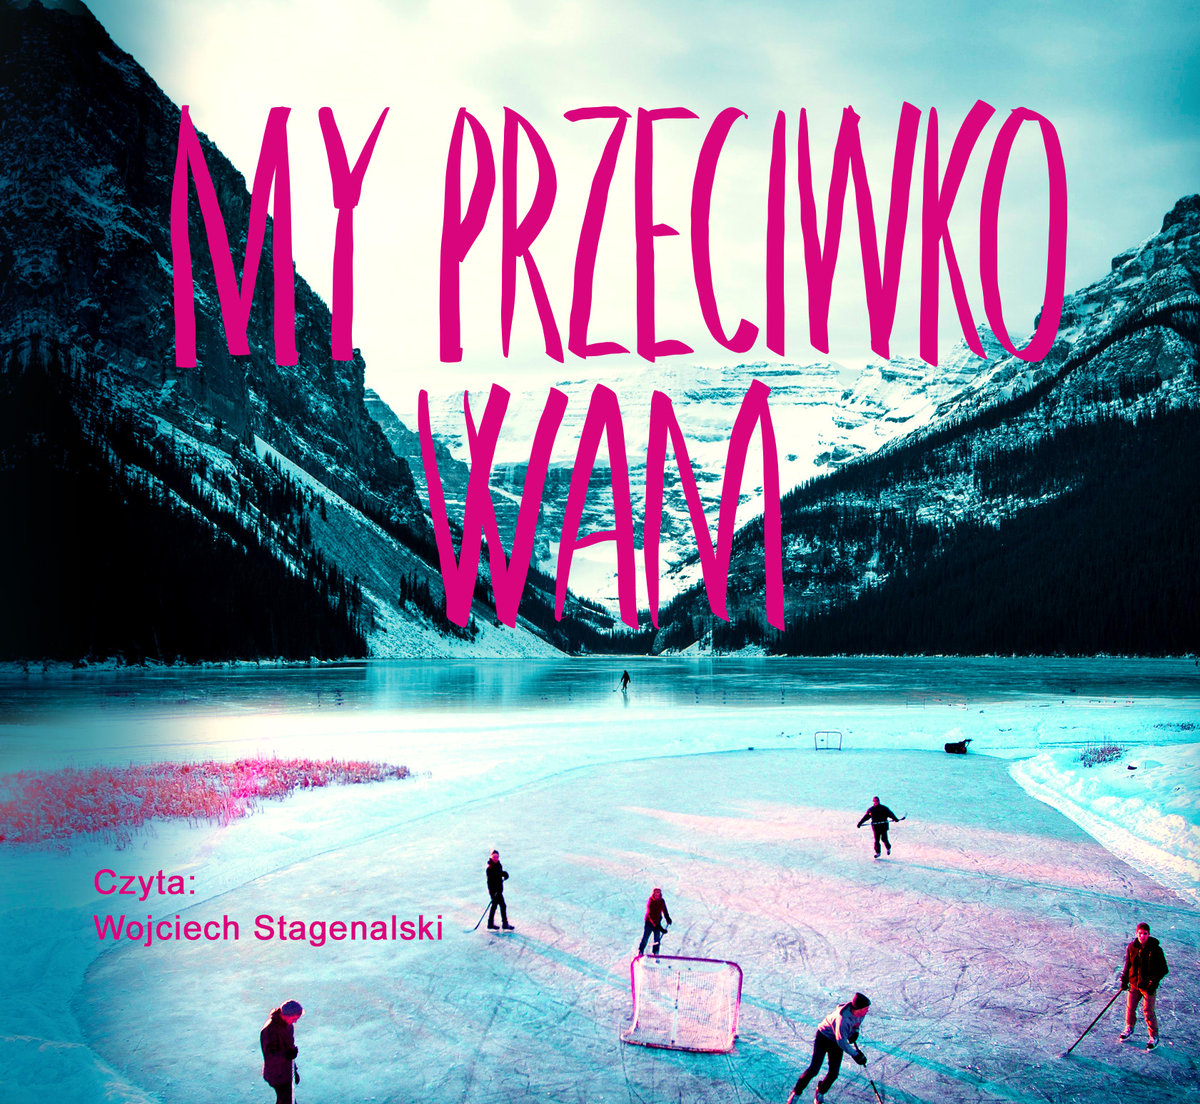 Backman Fredrik - My Przeciwko Wam